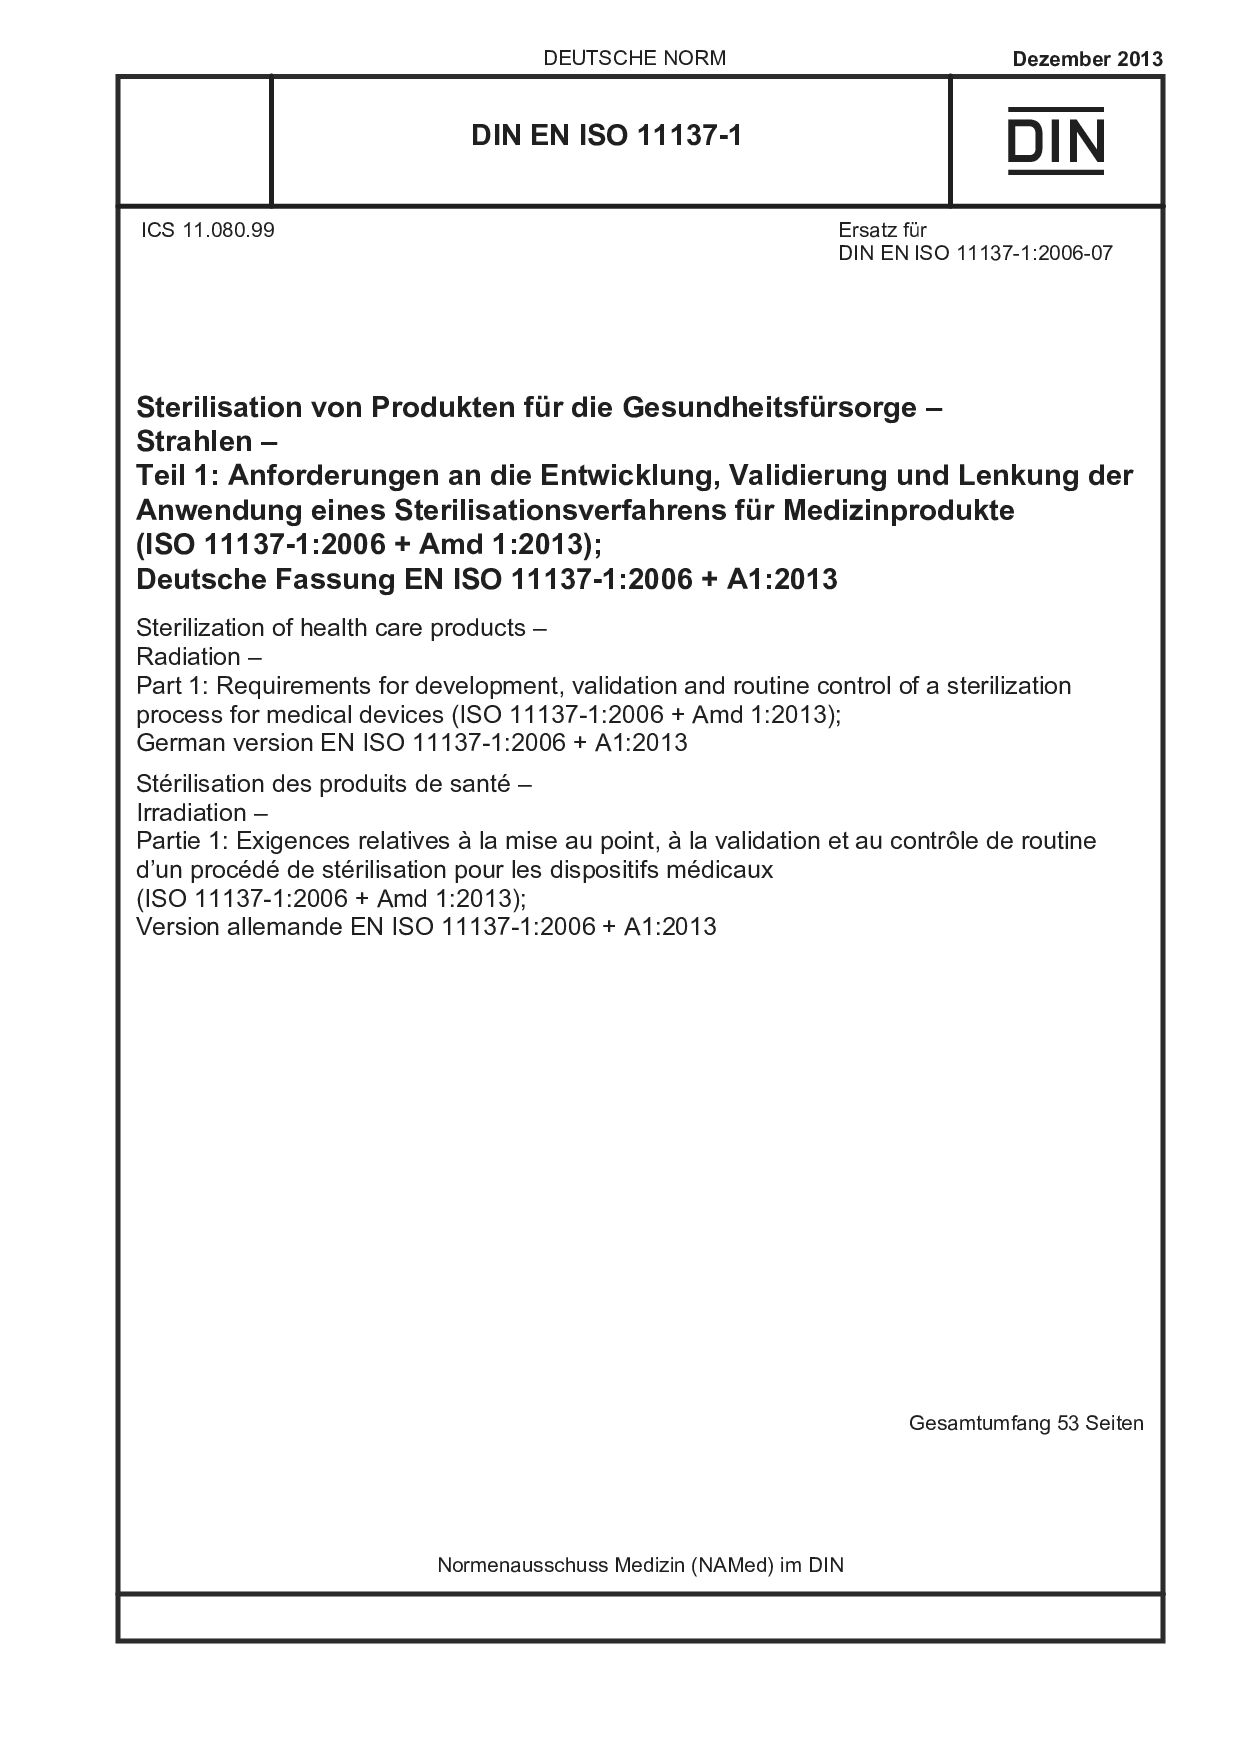 DIN EN ISO 11137-1:2013